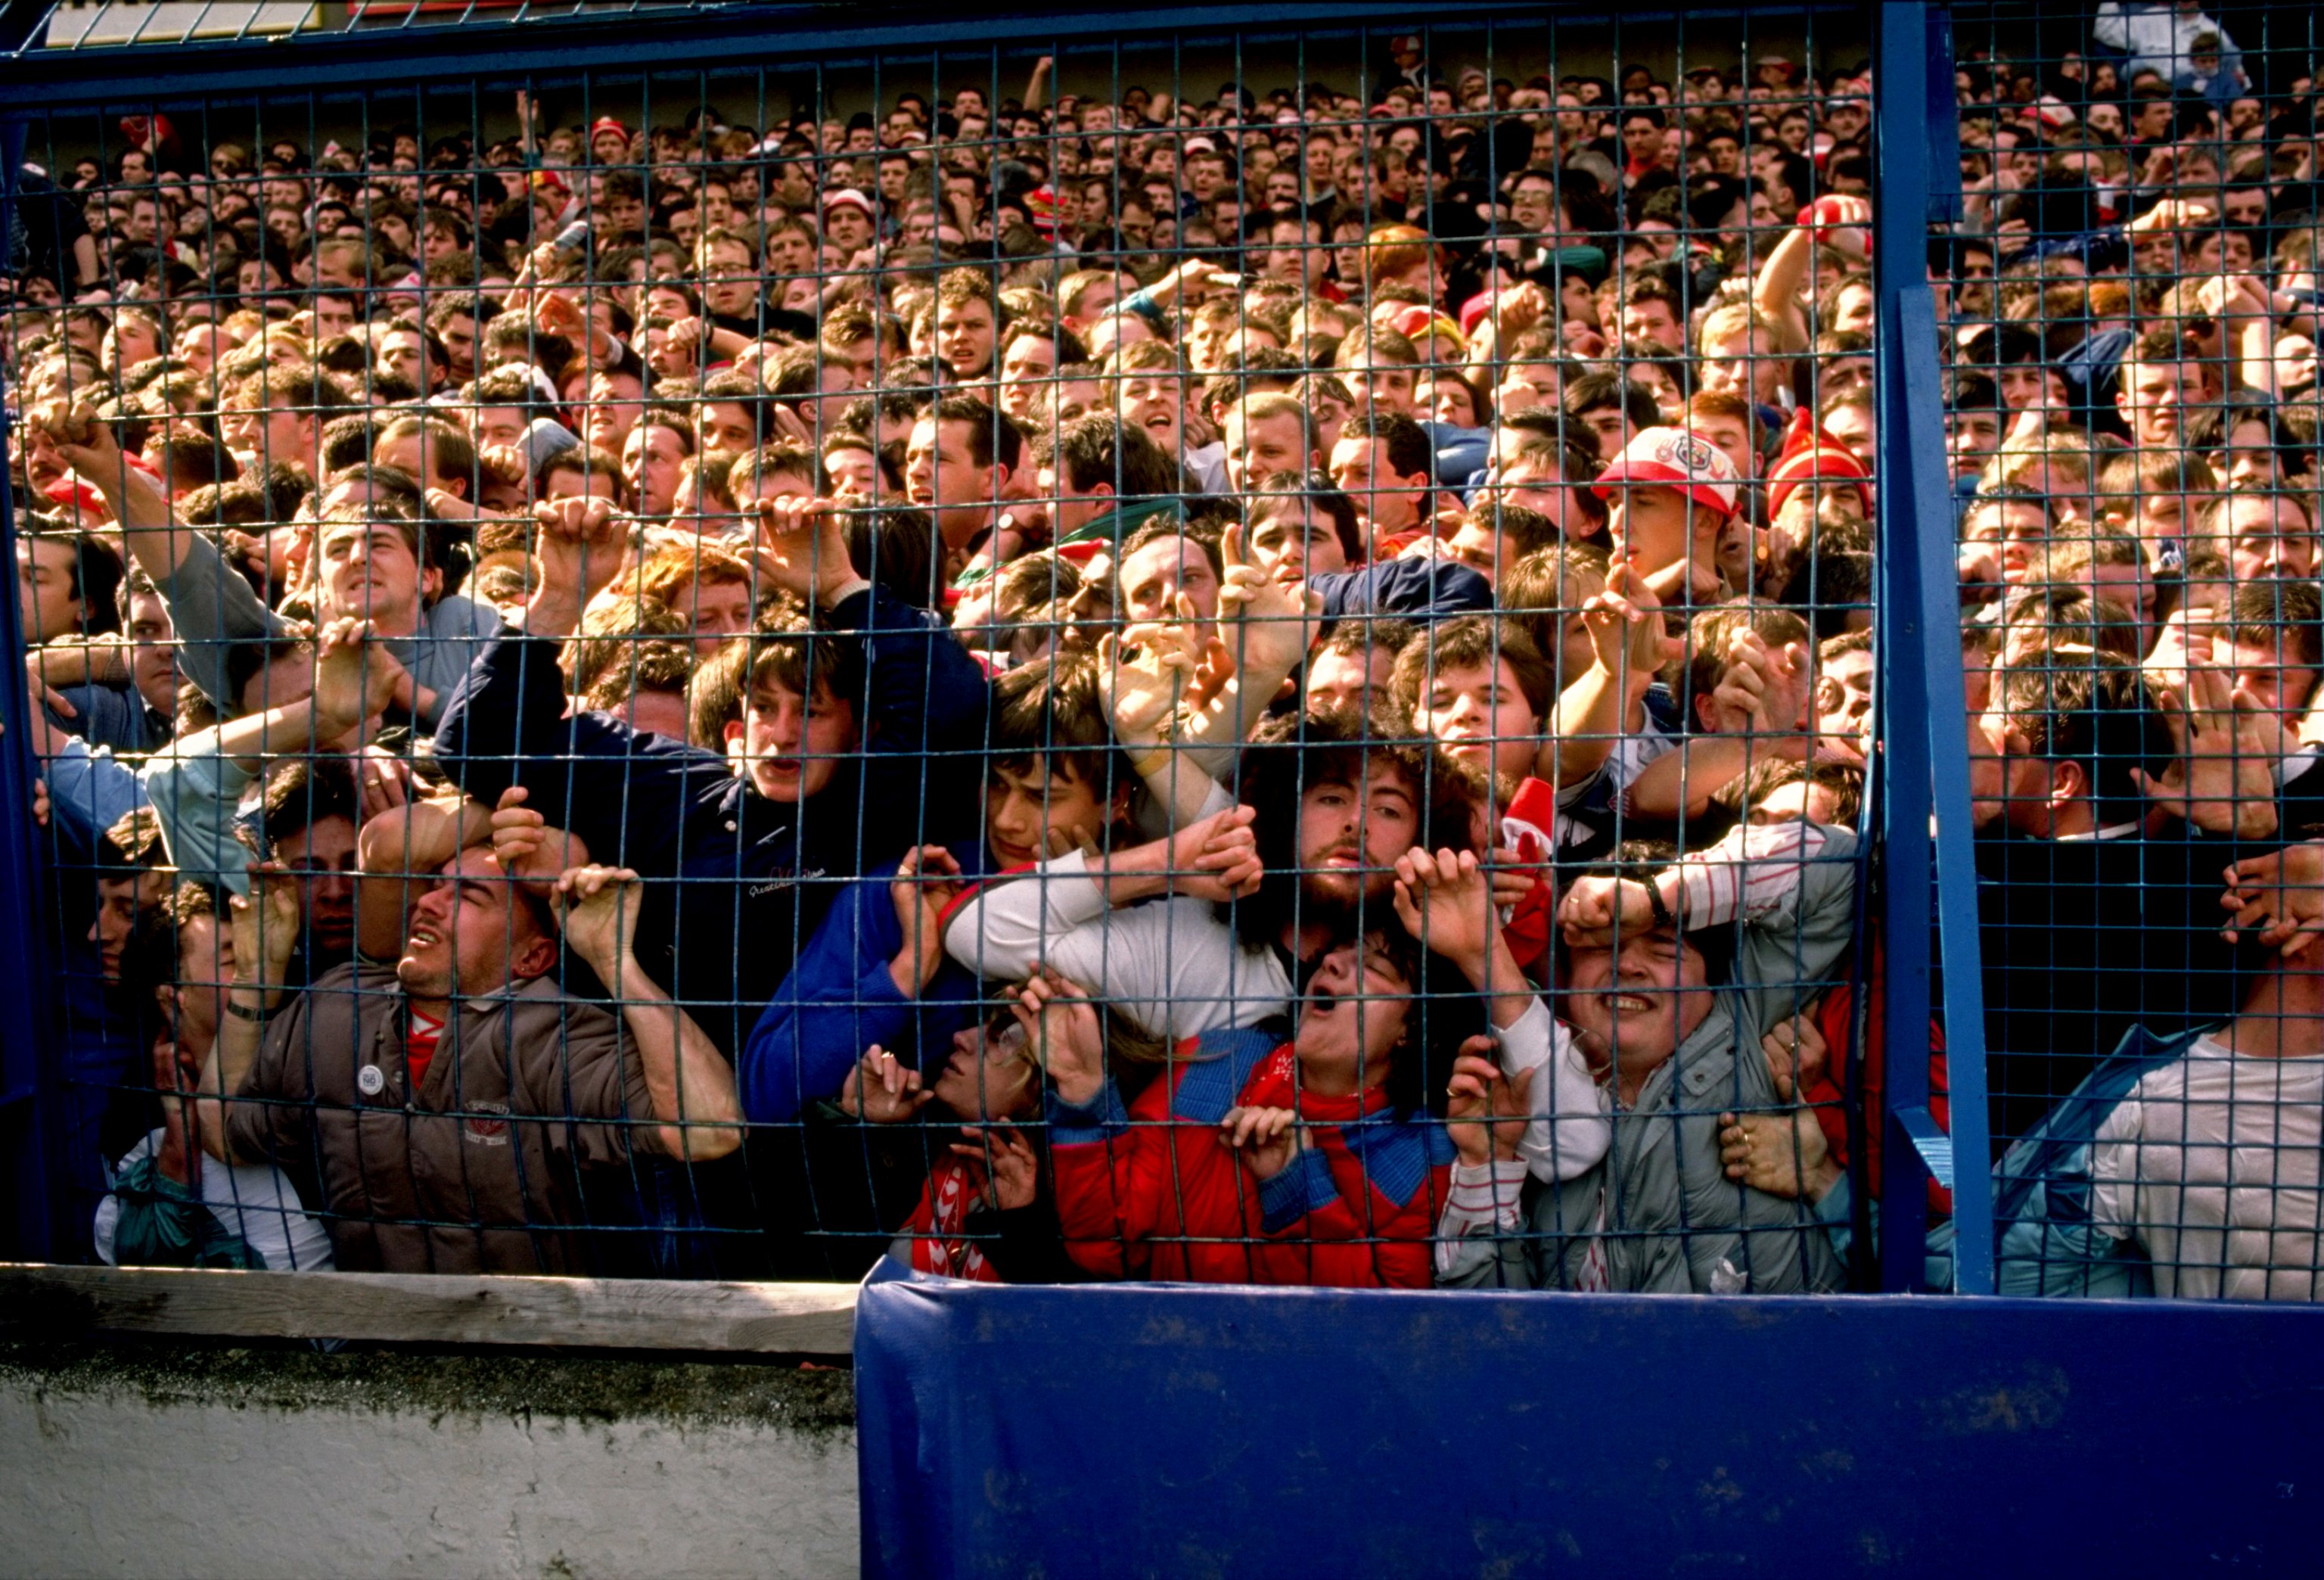 Что происходит на стадионе. Стадион Хиллсборо в Шеффилде, 1989. Стадион Хиллсборо Шеффилд. Давка на стадионе Хиллсборо в Шеффилде 1989. 15 Апреля 1989 года на стадионе Хиллсборо в Англии.